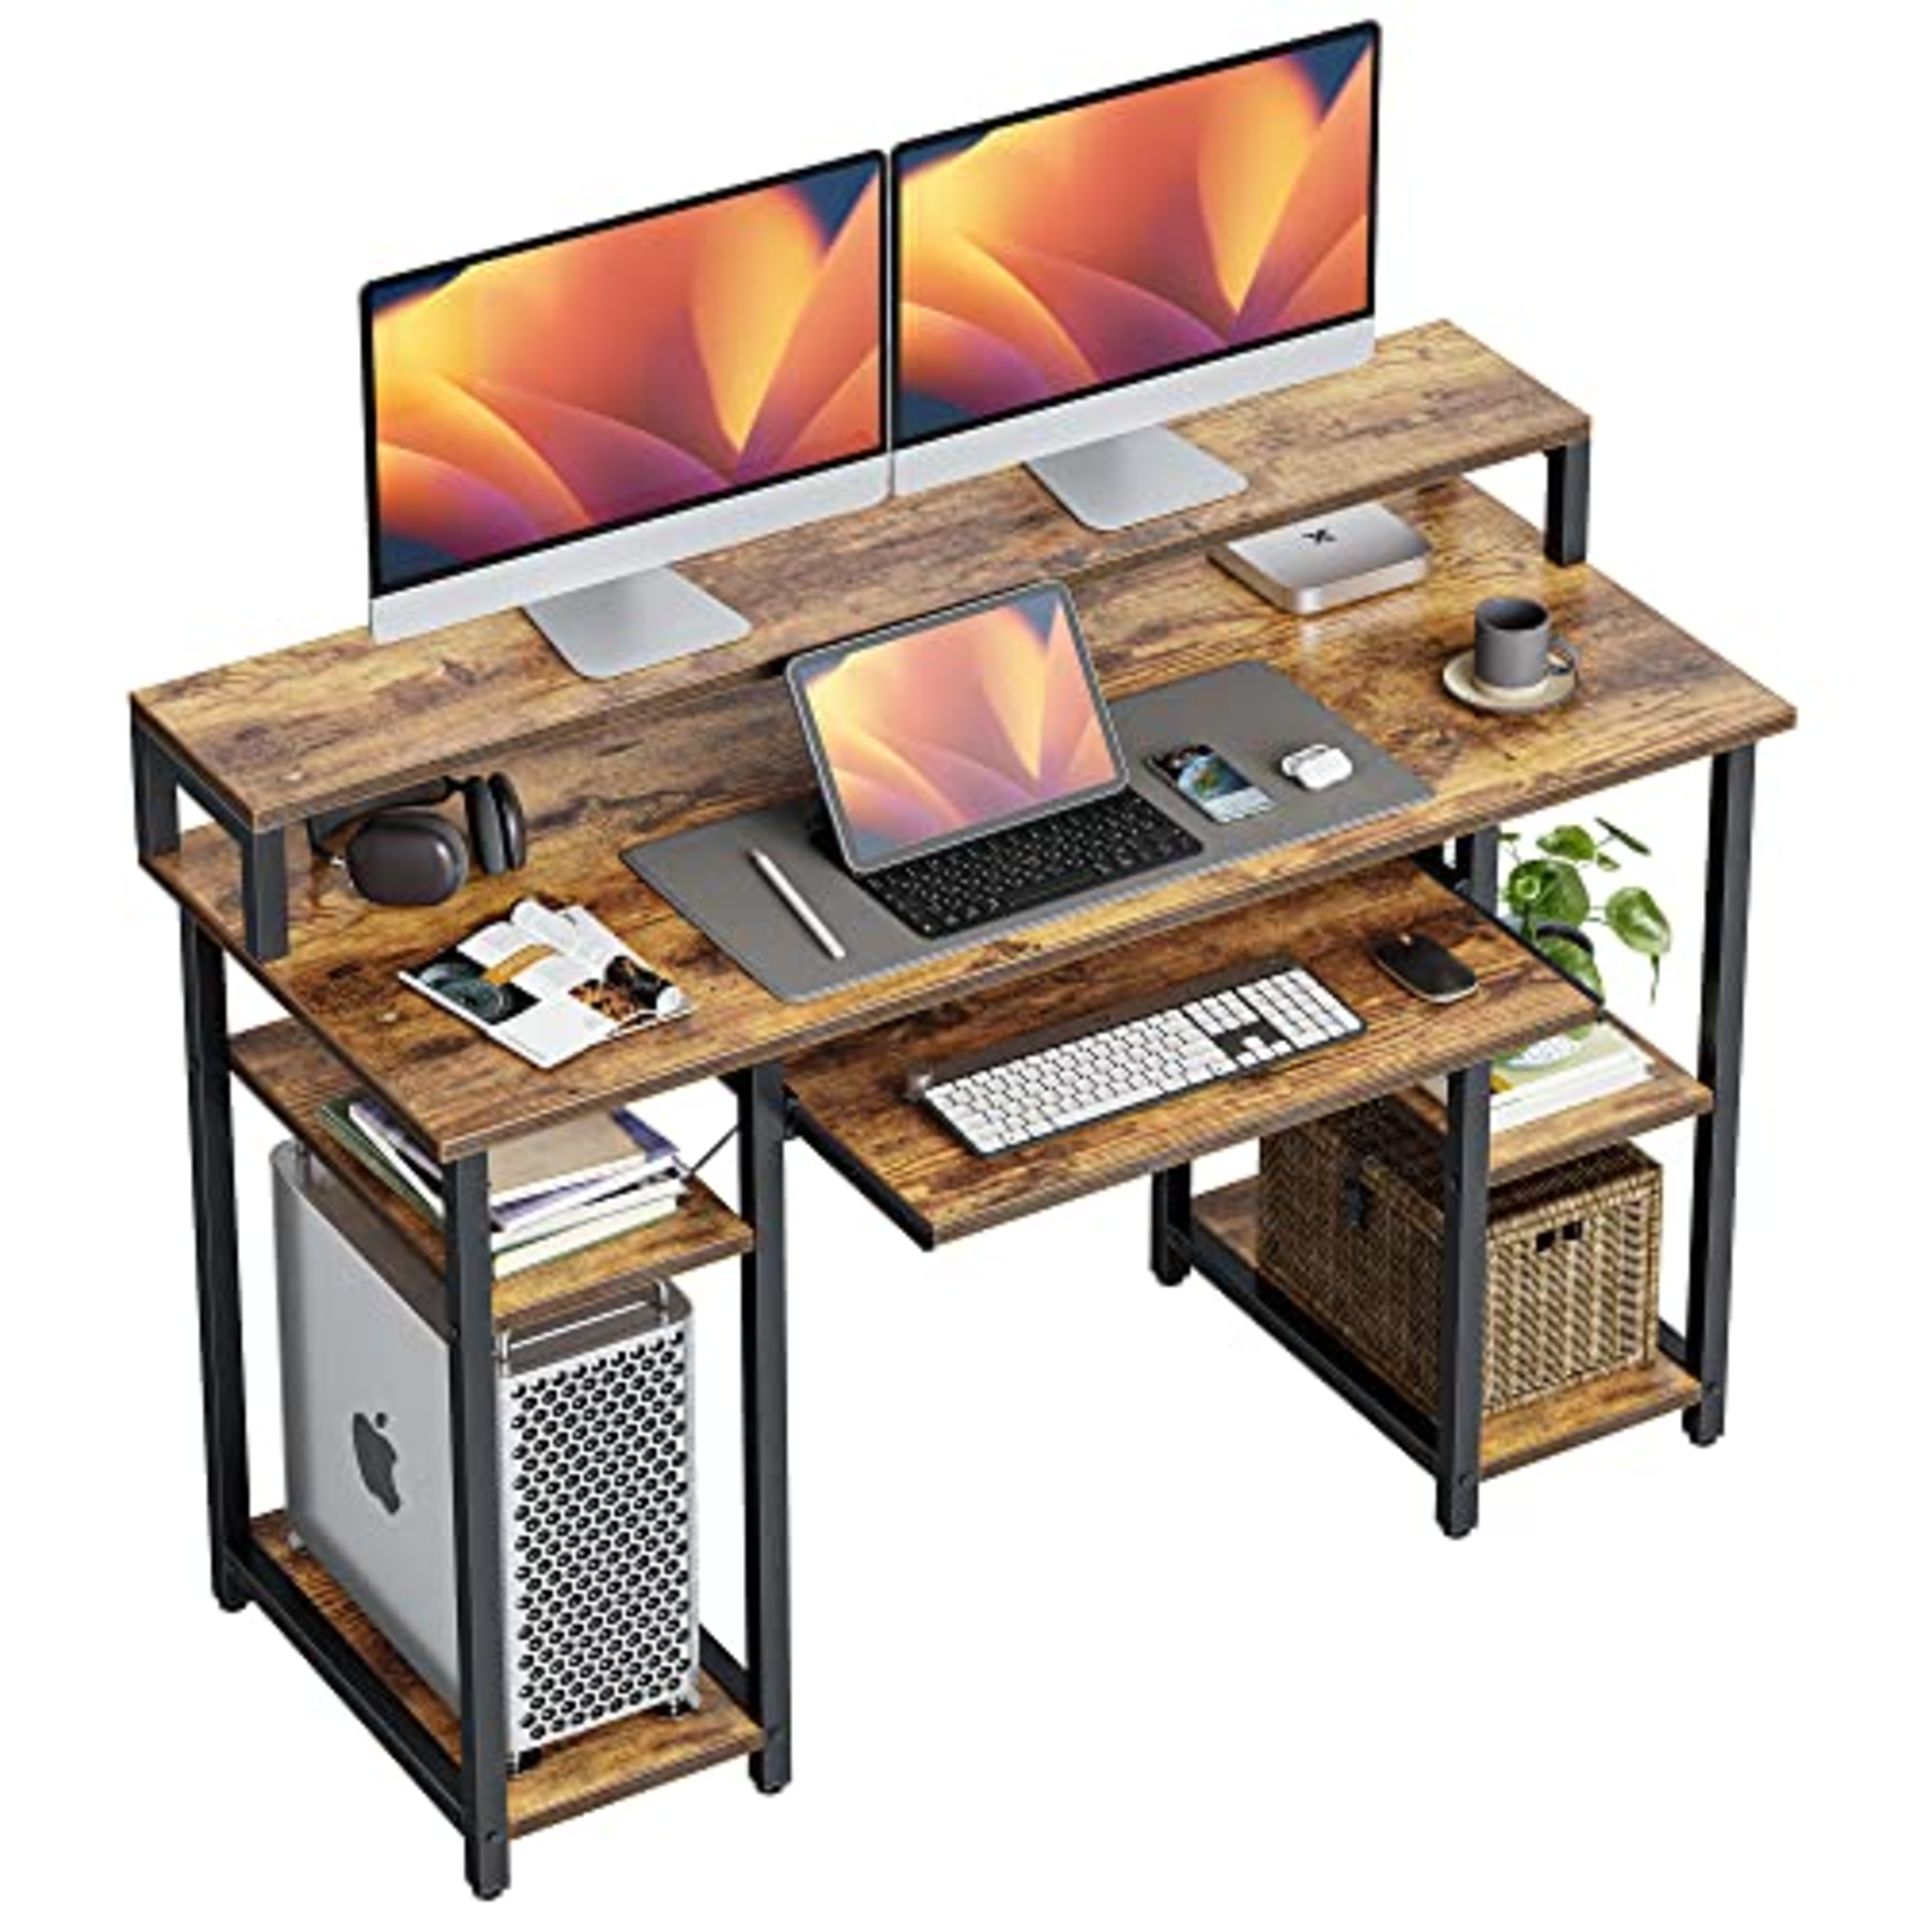 RRP £548.61 CubiCubi 120x50 cm Computer Desk with Storage Shelves